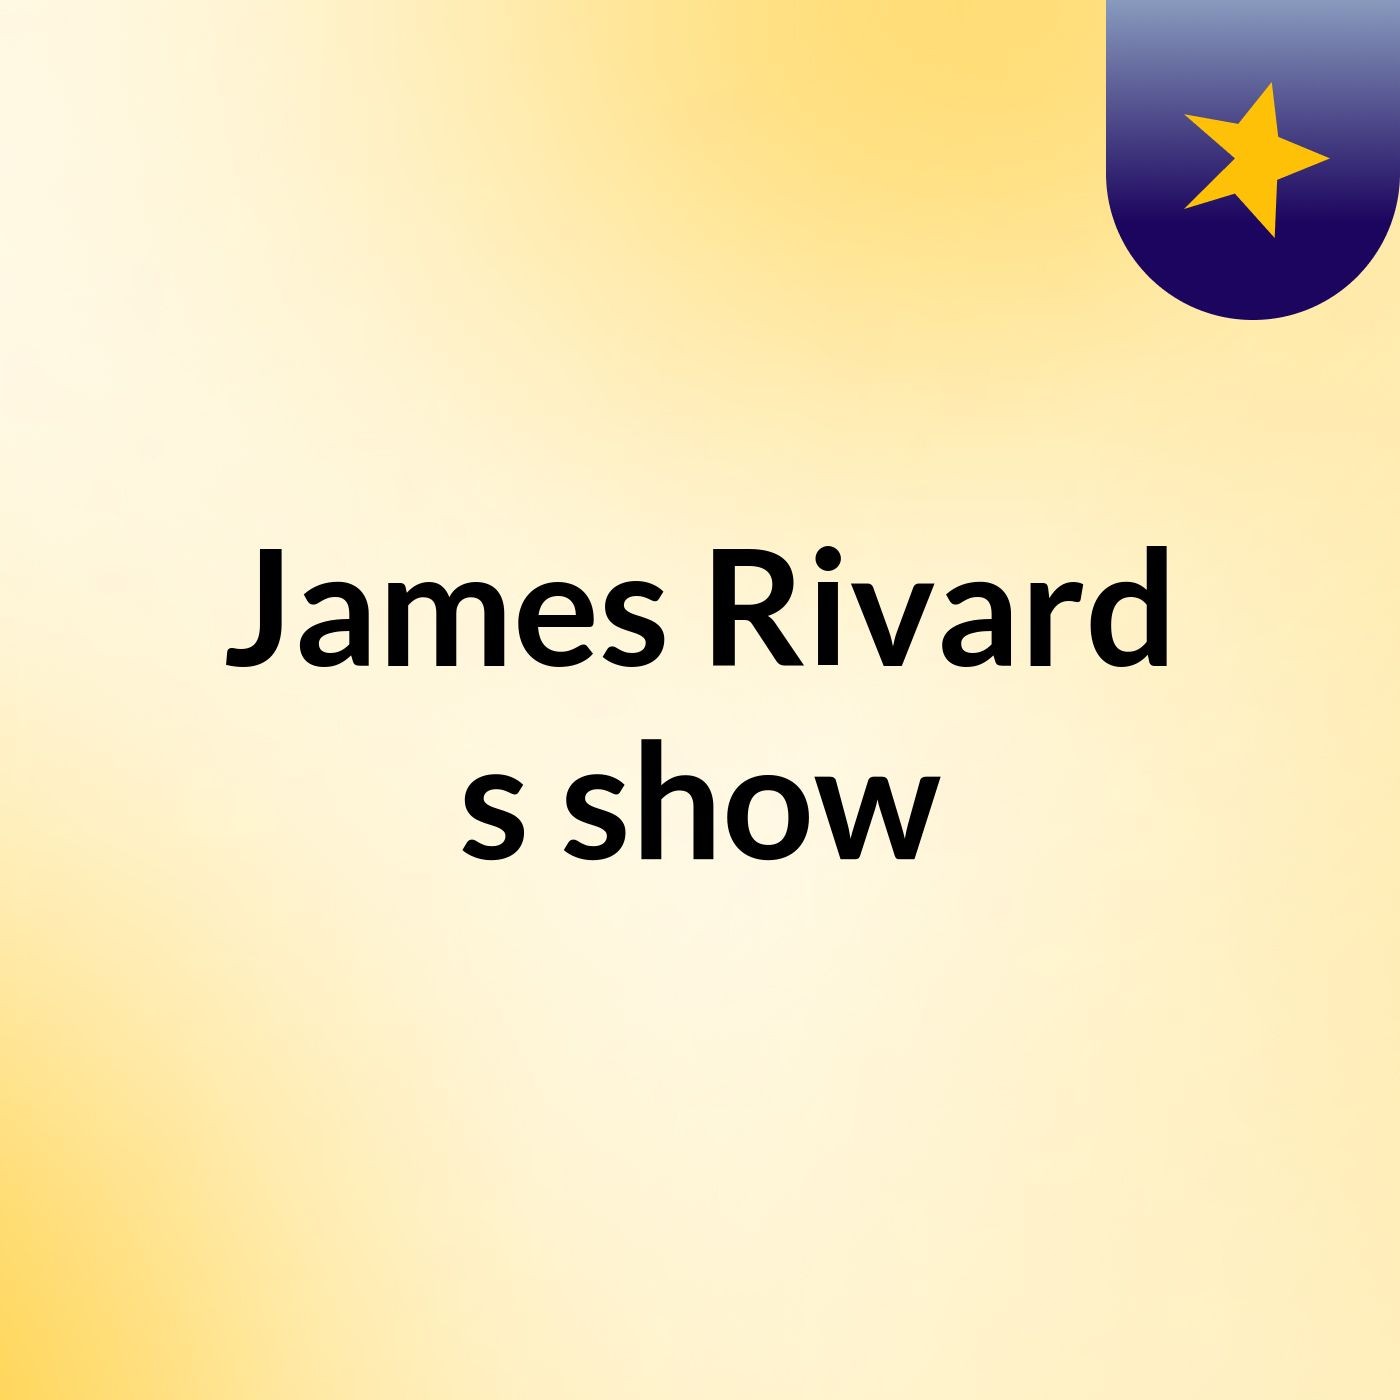 James Rivard's show